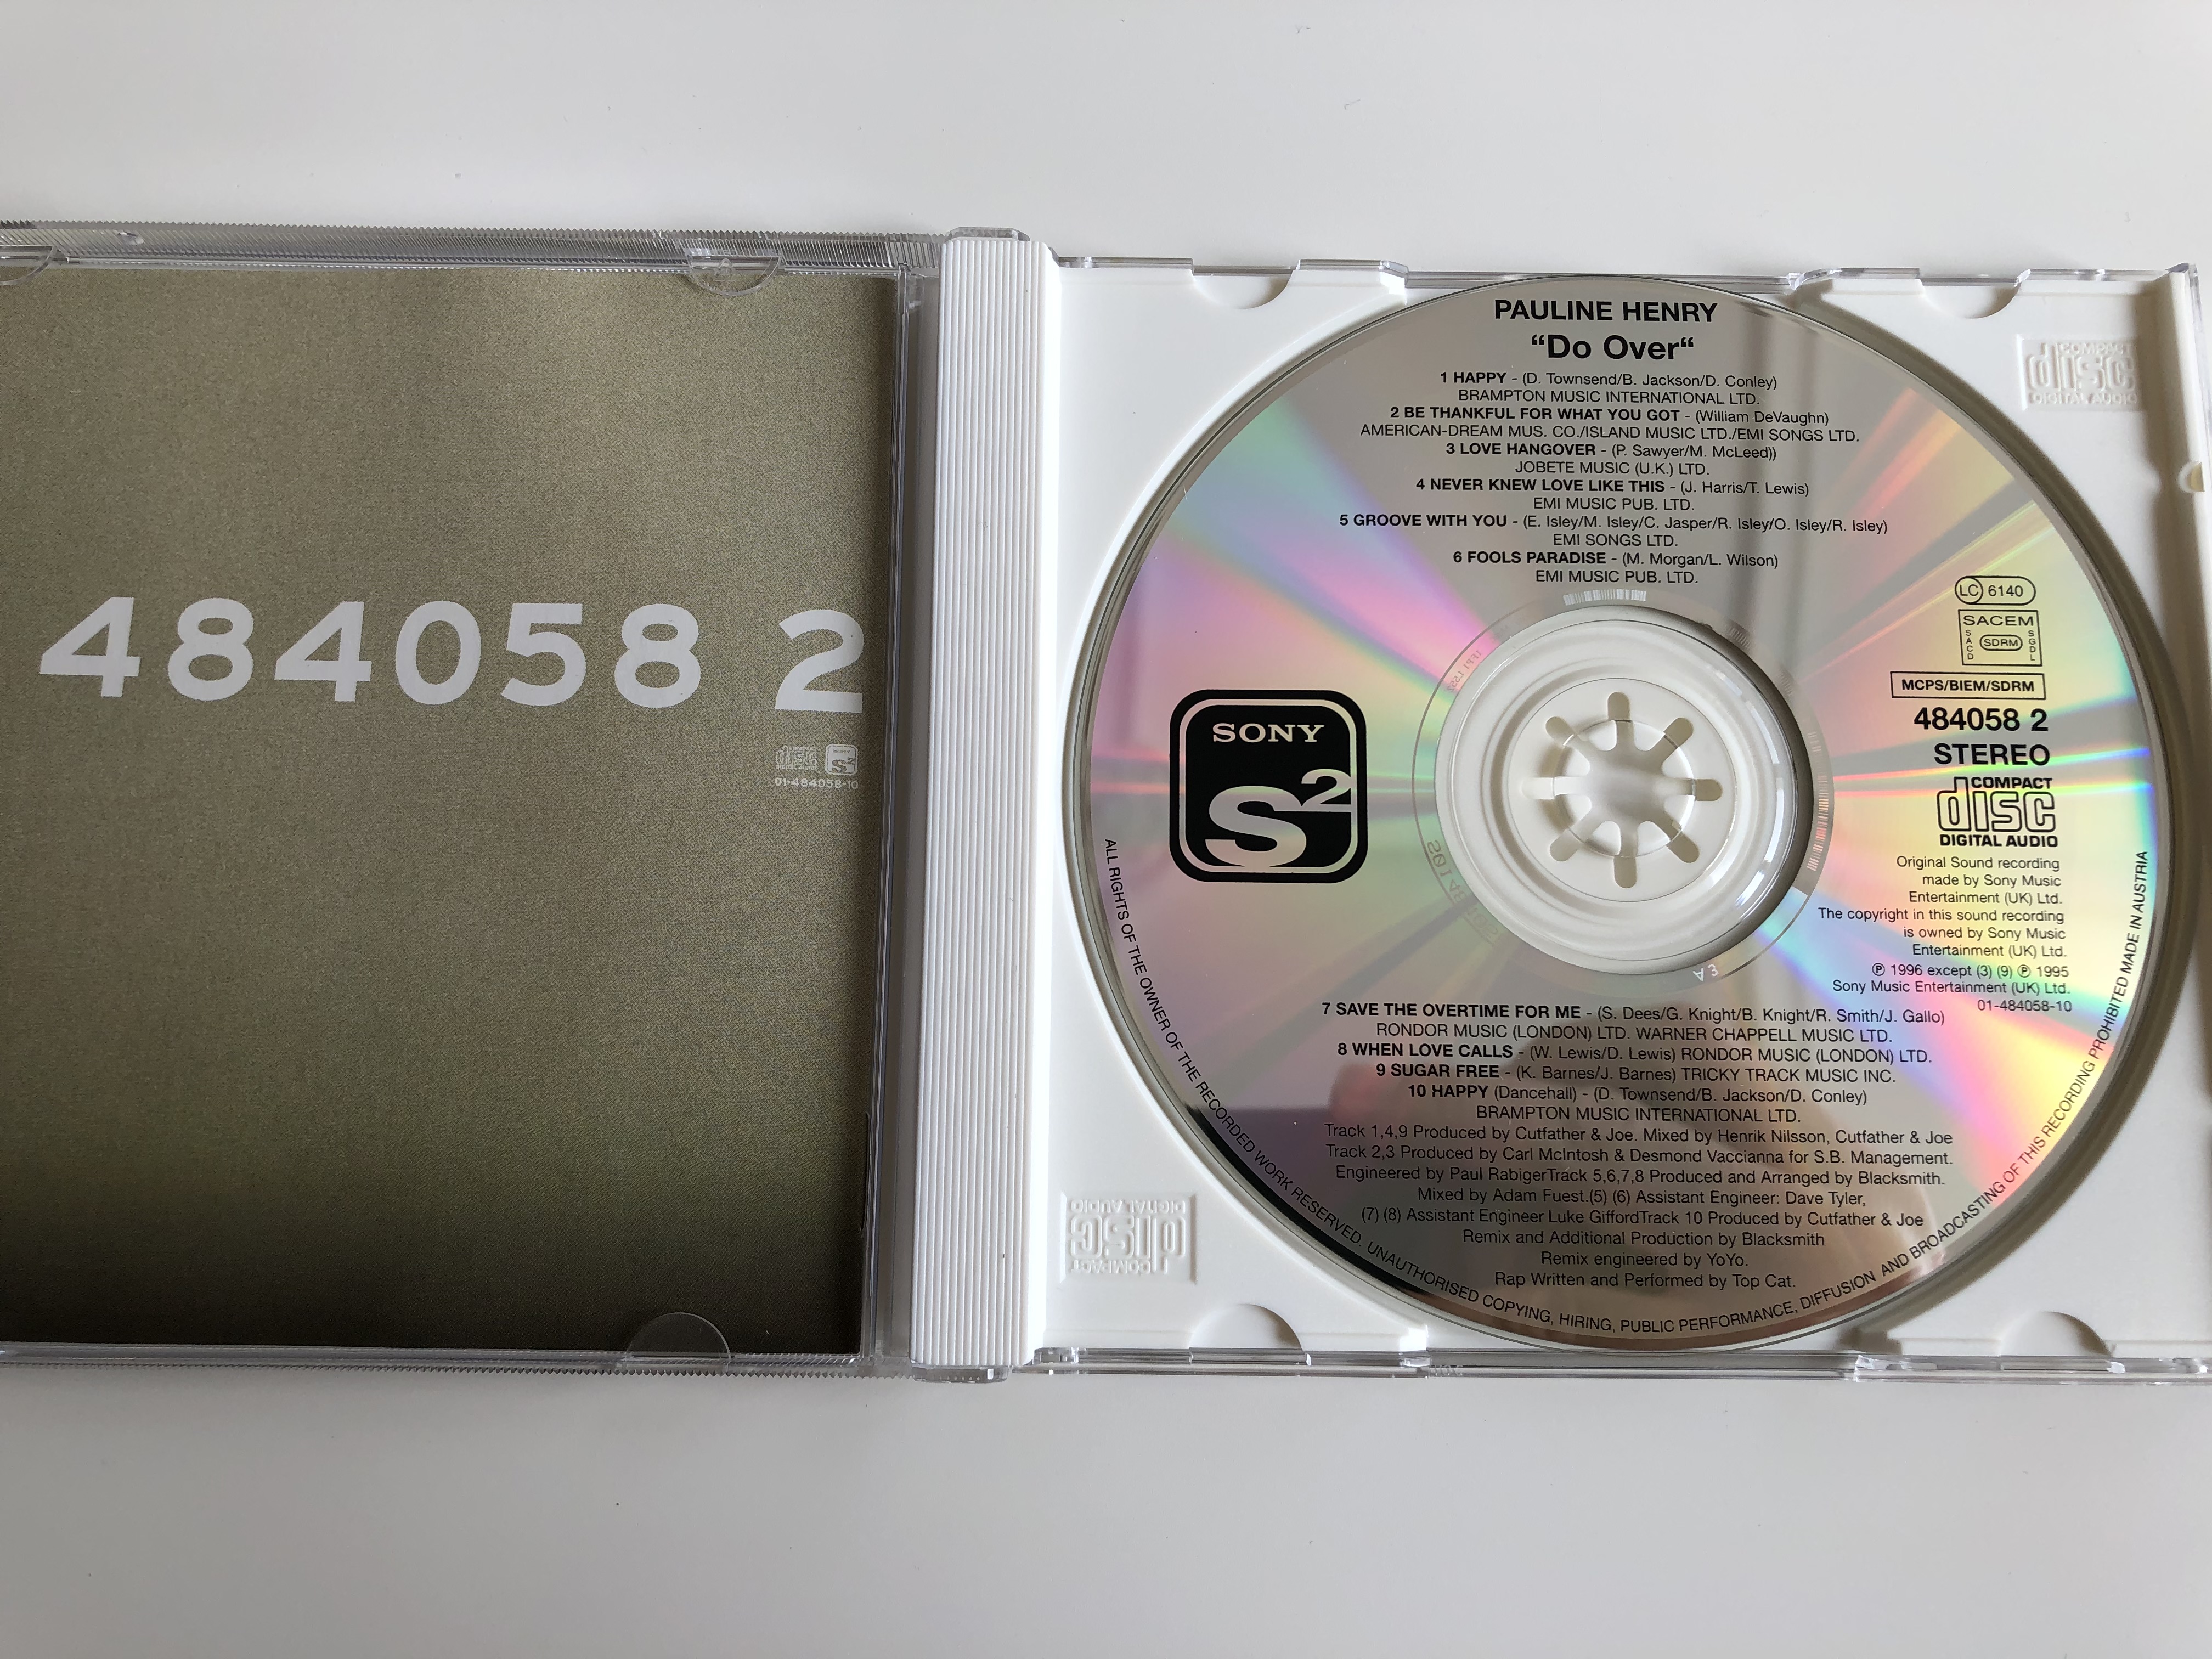 pauline-henry-do-over-sony-soho-square-audio-cd-1996-stereo-484058-2-2-.jpg